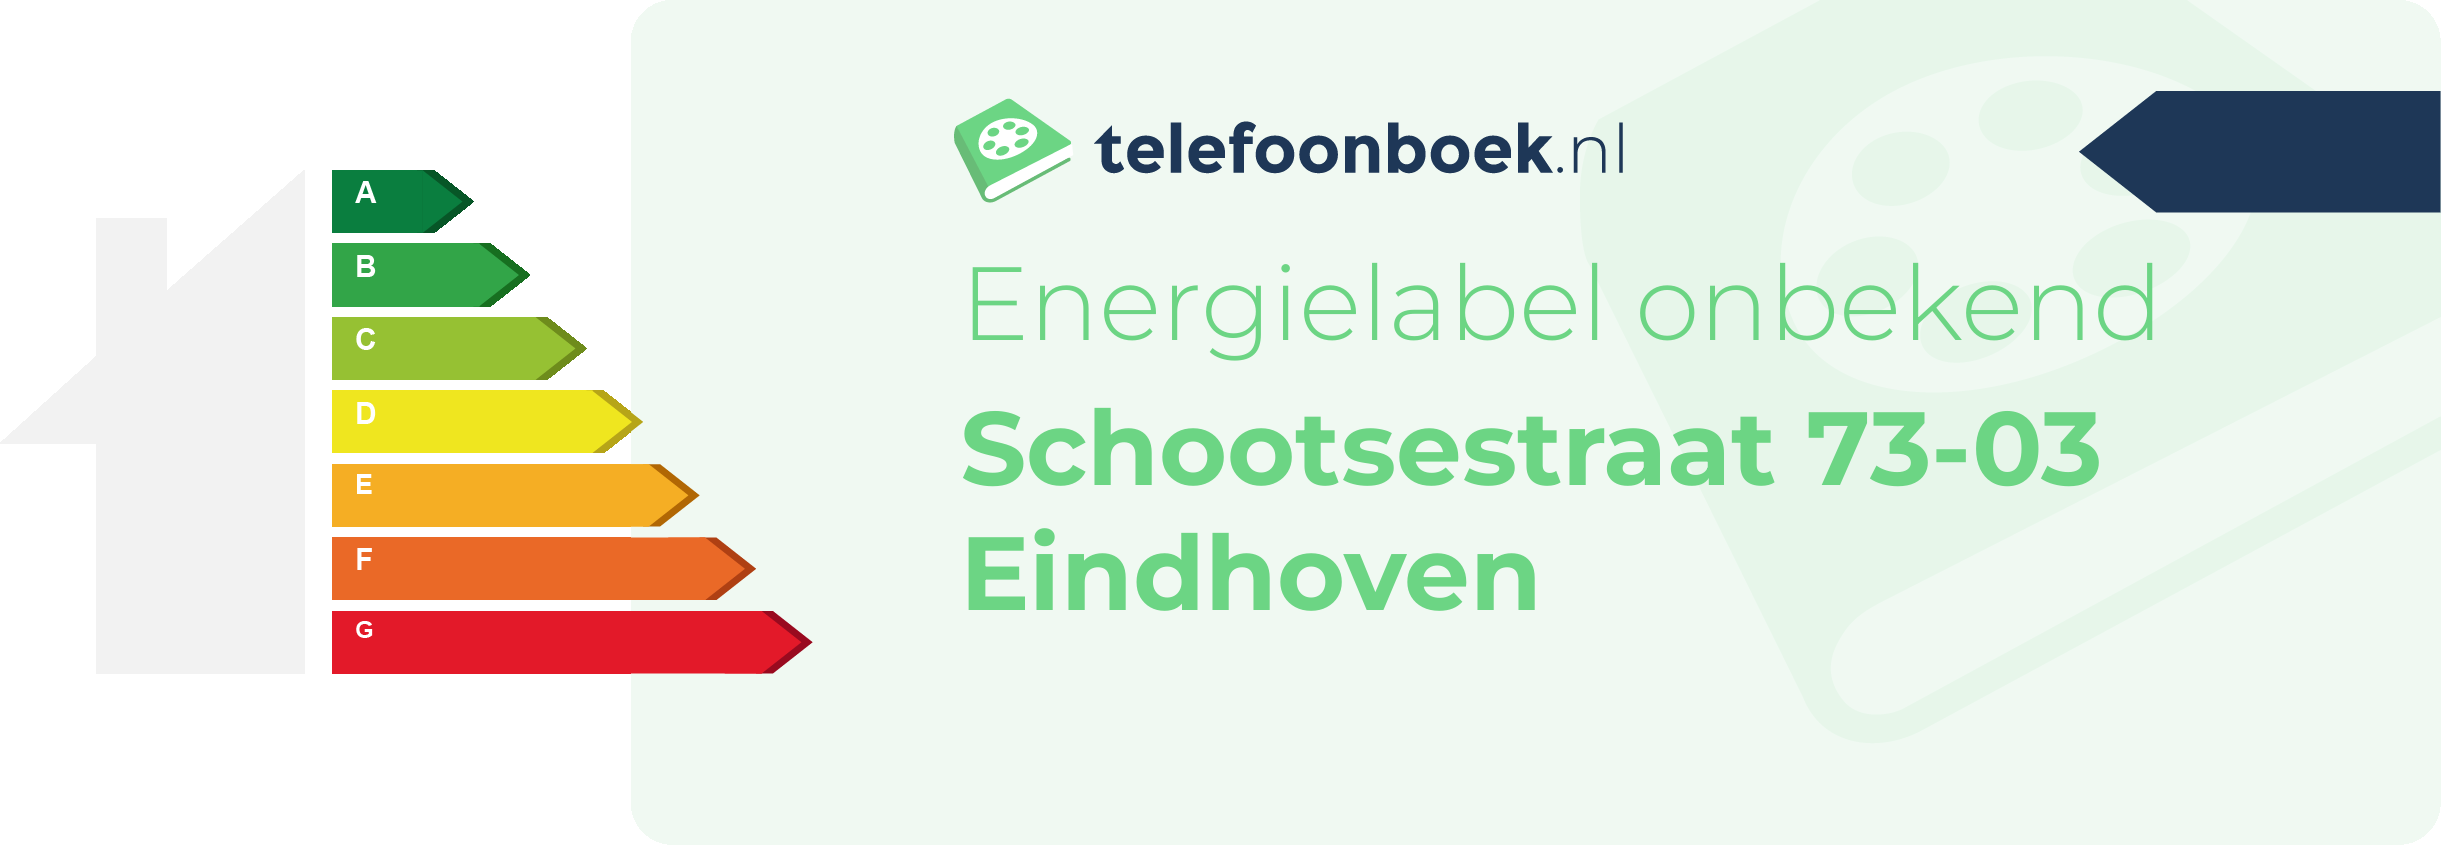 Energielabel Schootsestraat 73-03 Eindhoven